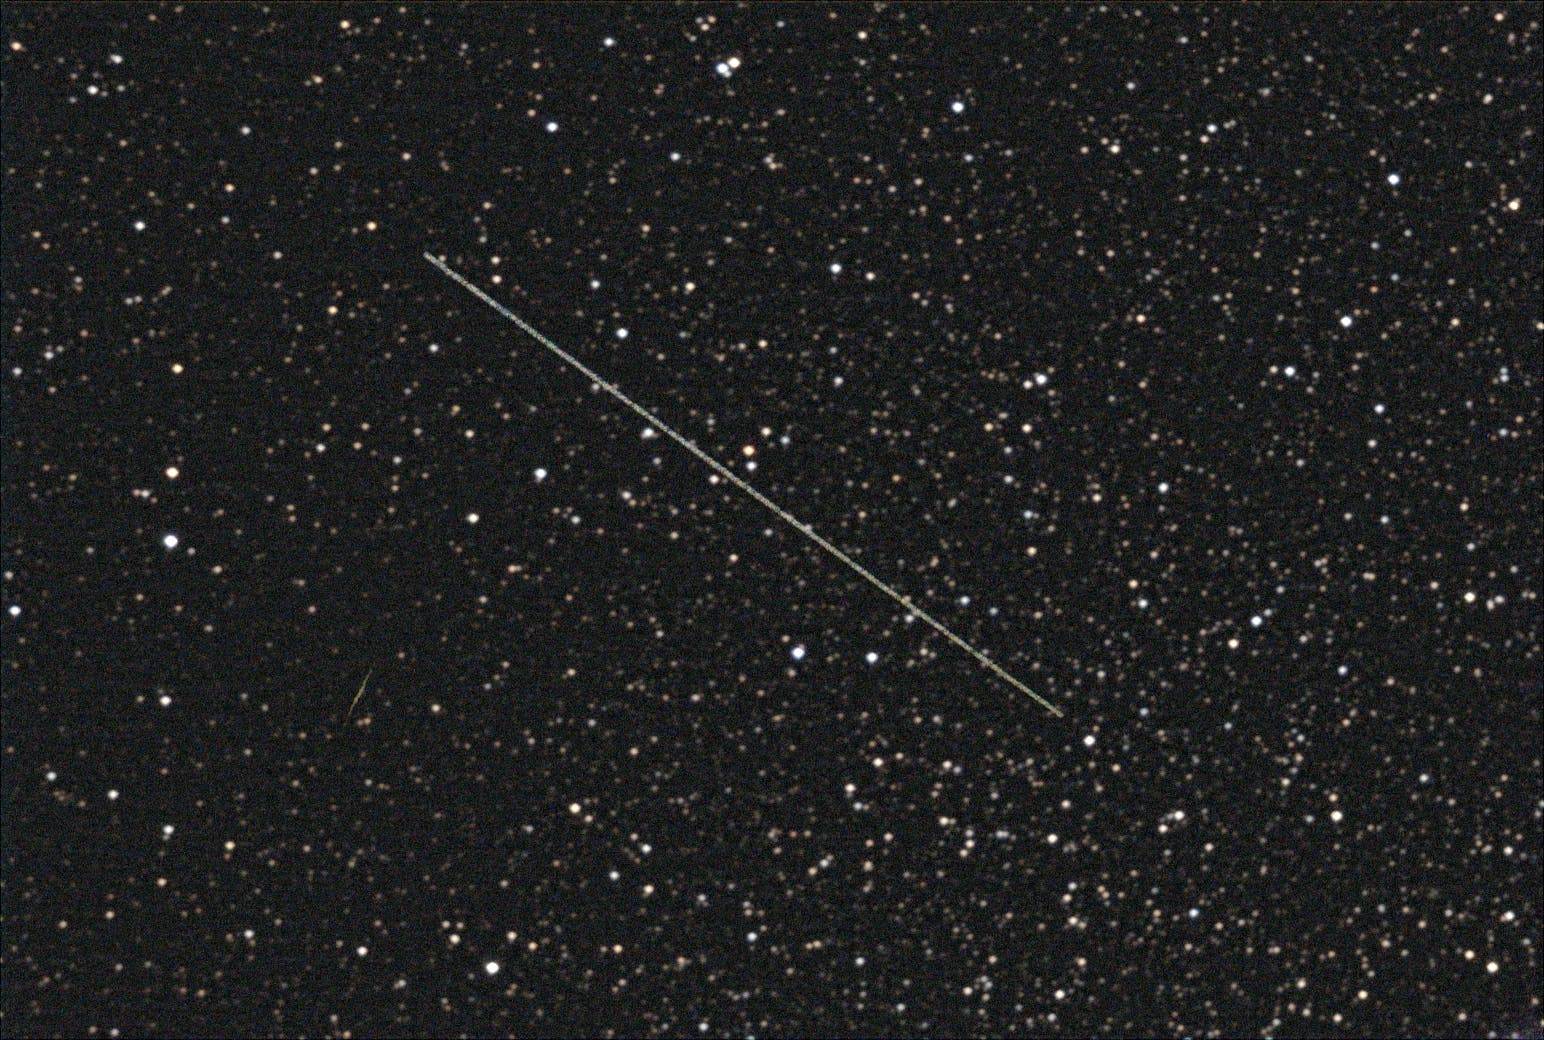 Asteroid (5693) 1993 EA